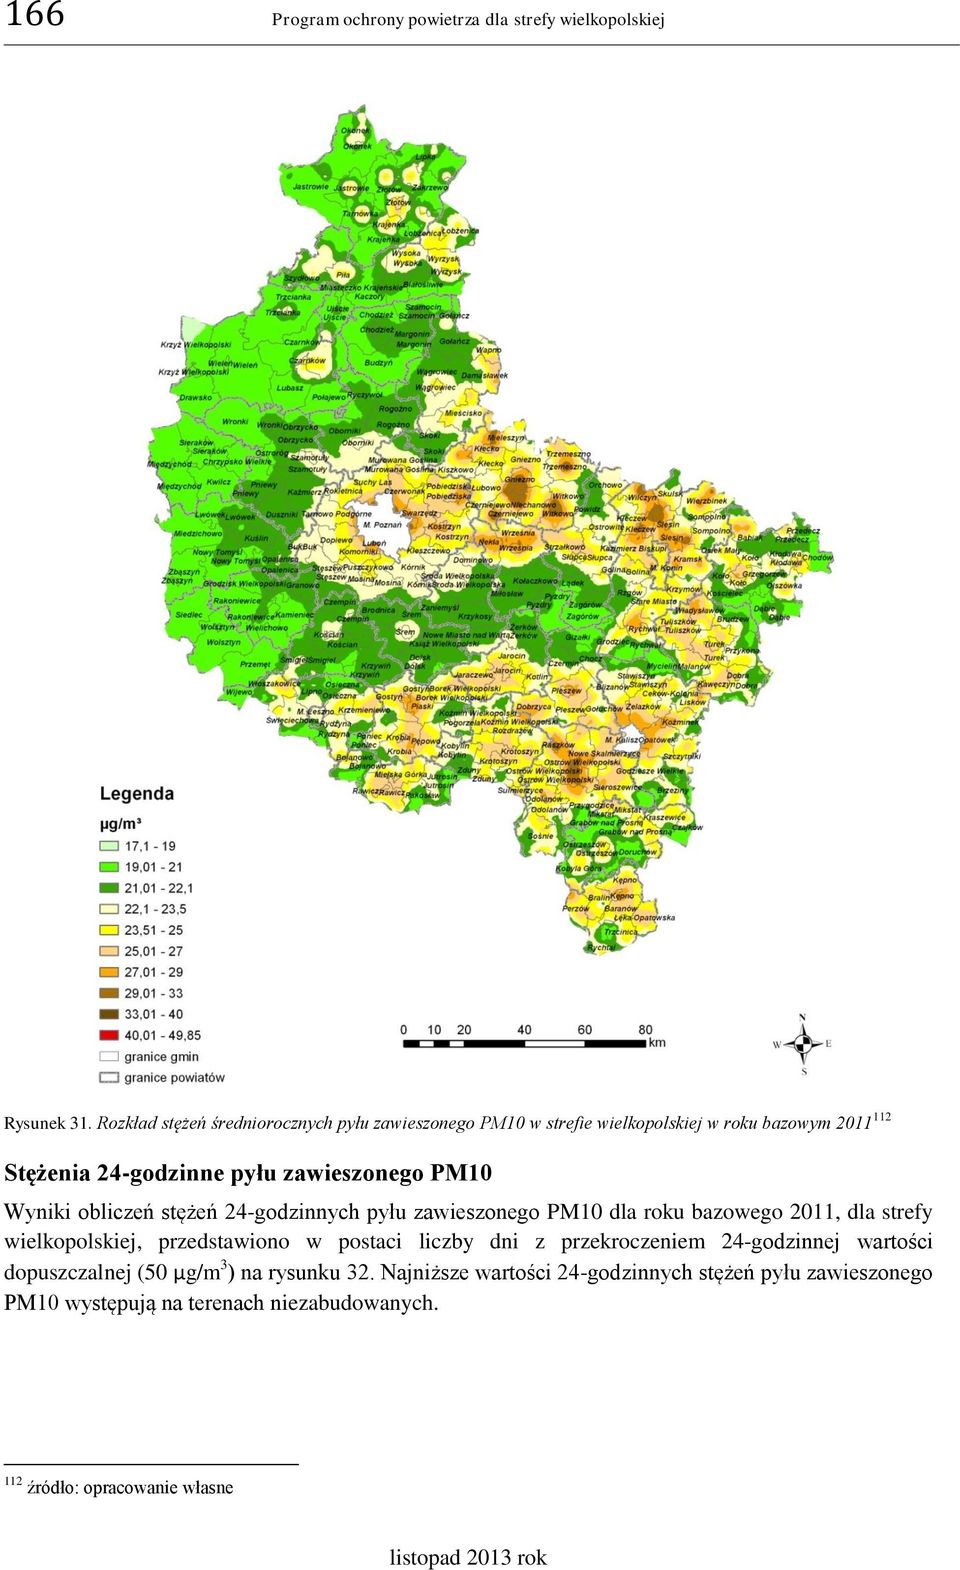 PM10 Wyniki obliczeń stężeń 24-godzinnych pyłu zawieszonego PM10 dla roku bazowego 2011, dla strefy wielkopolskiej, przedstawiono w postaci